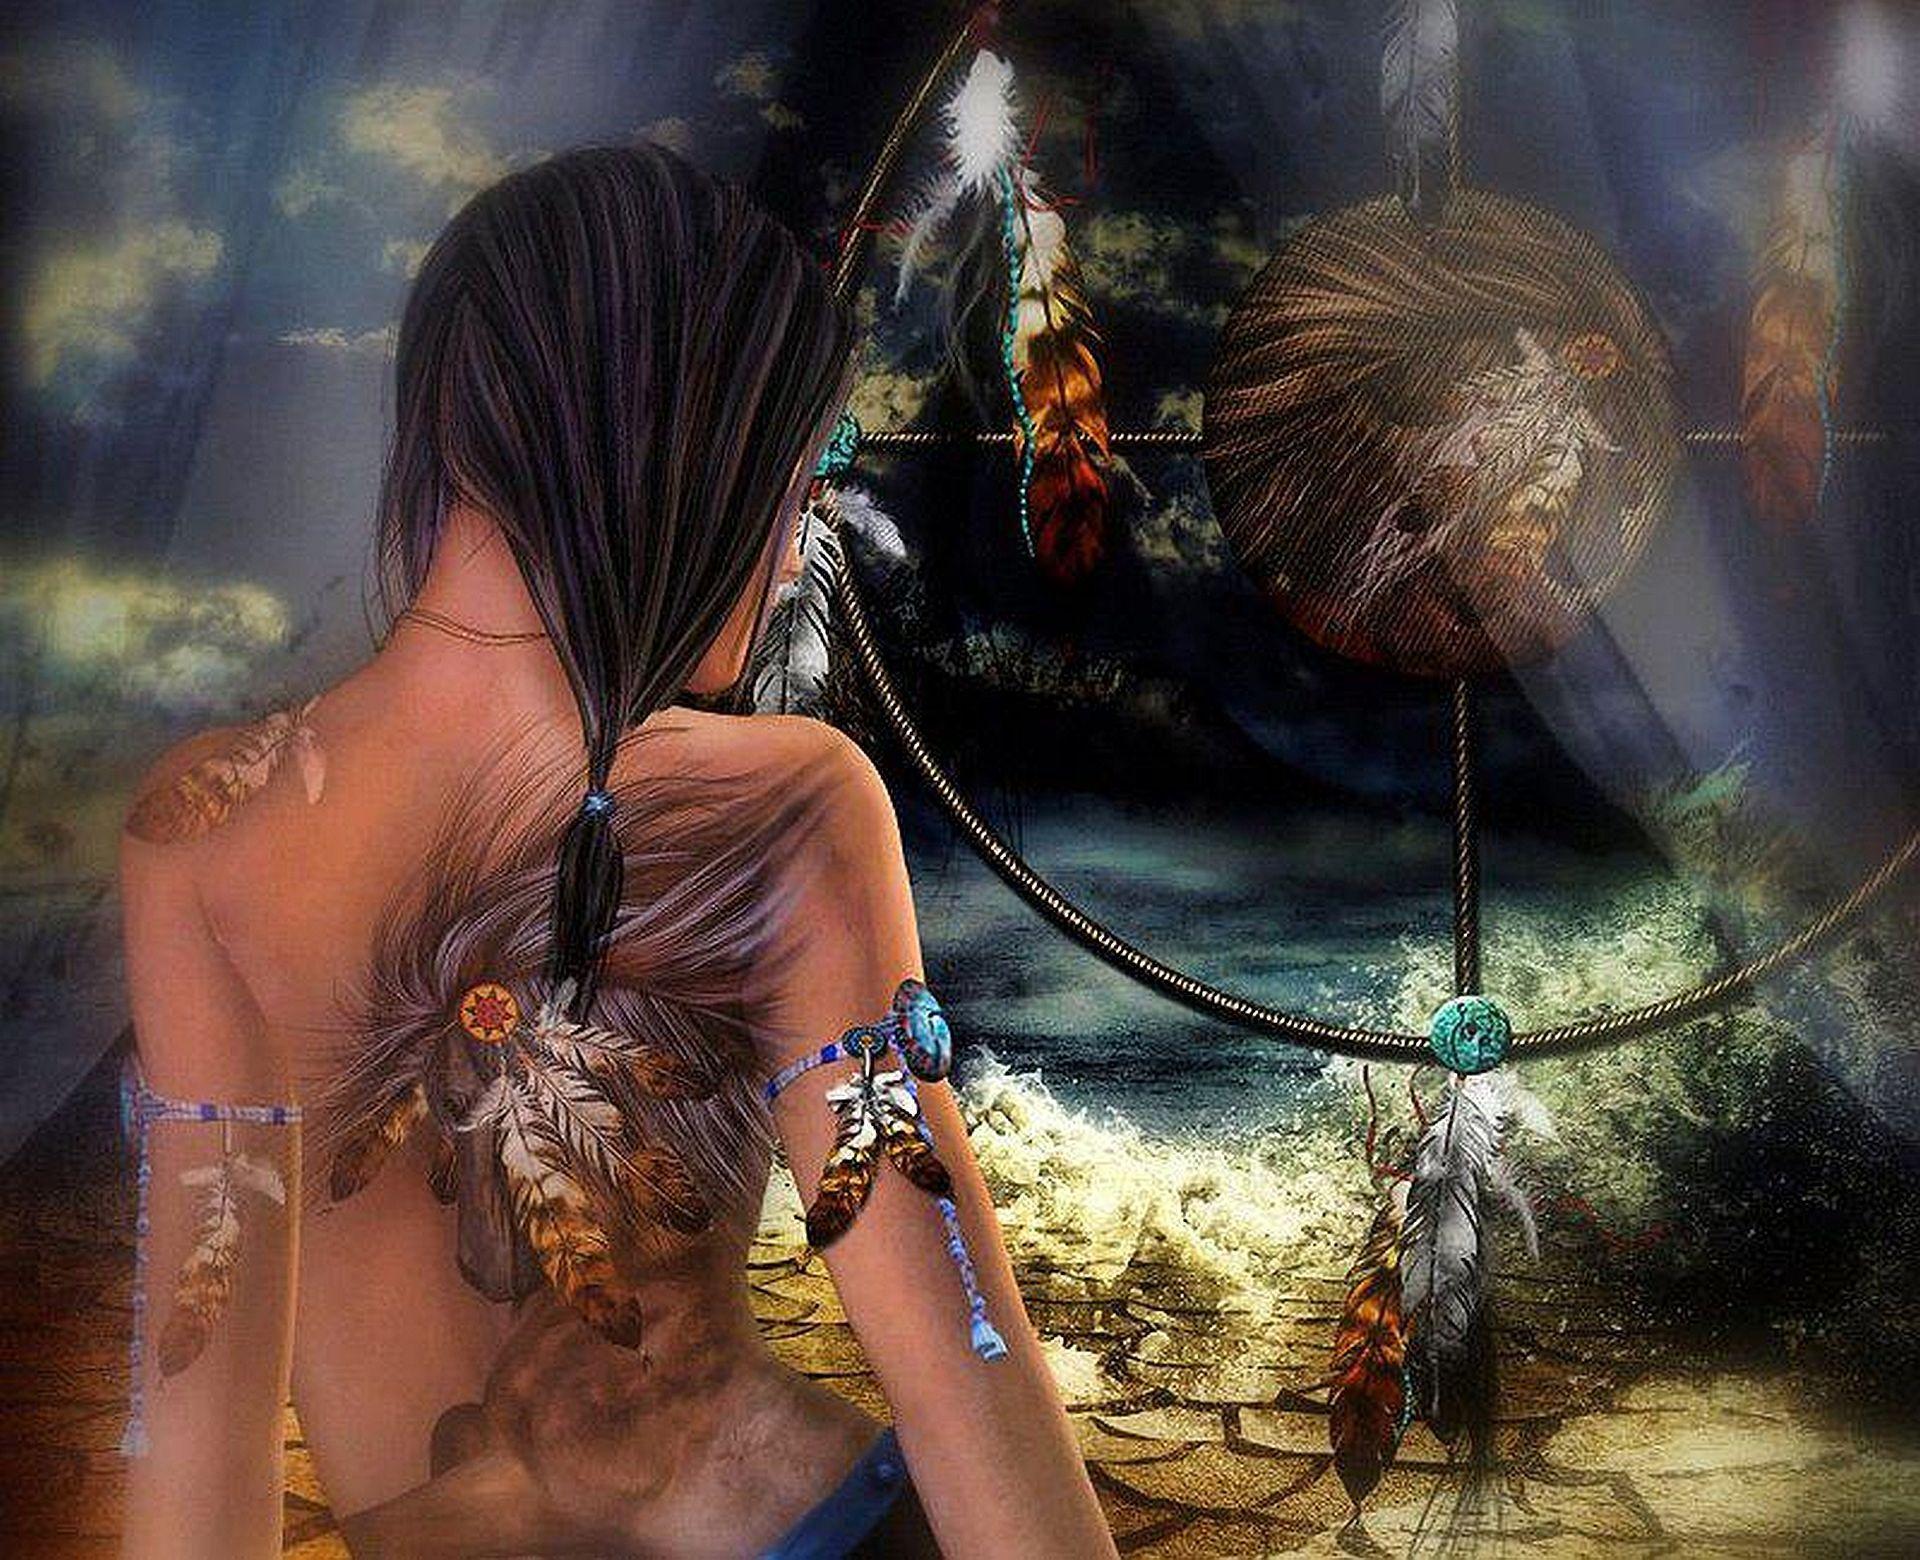 native american fantasy picture. Native american dreamcatcher